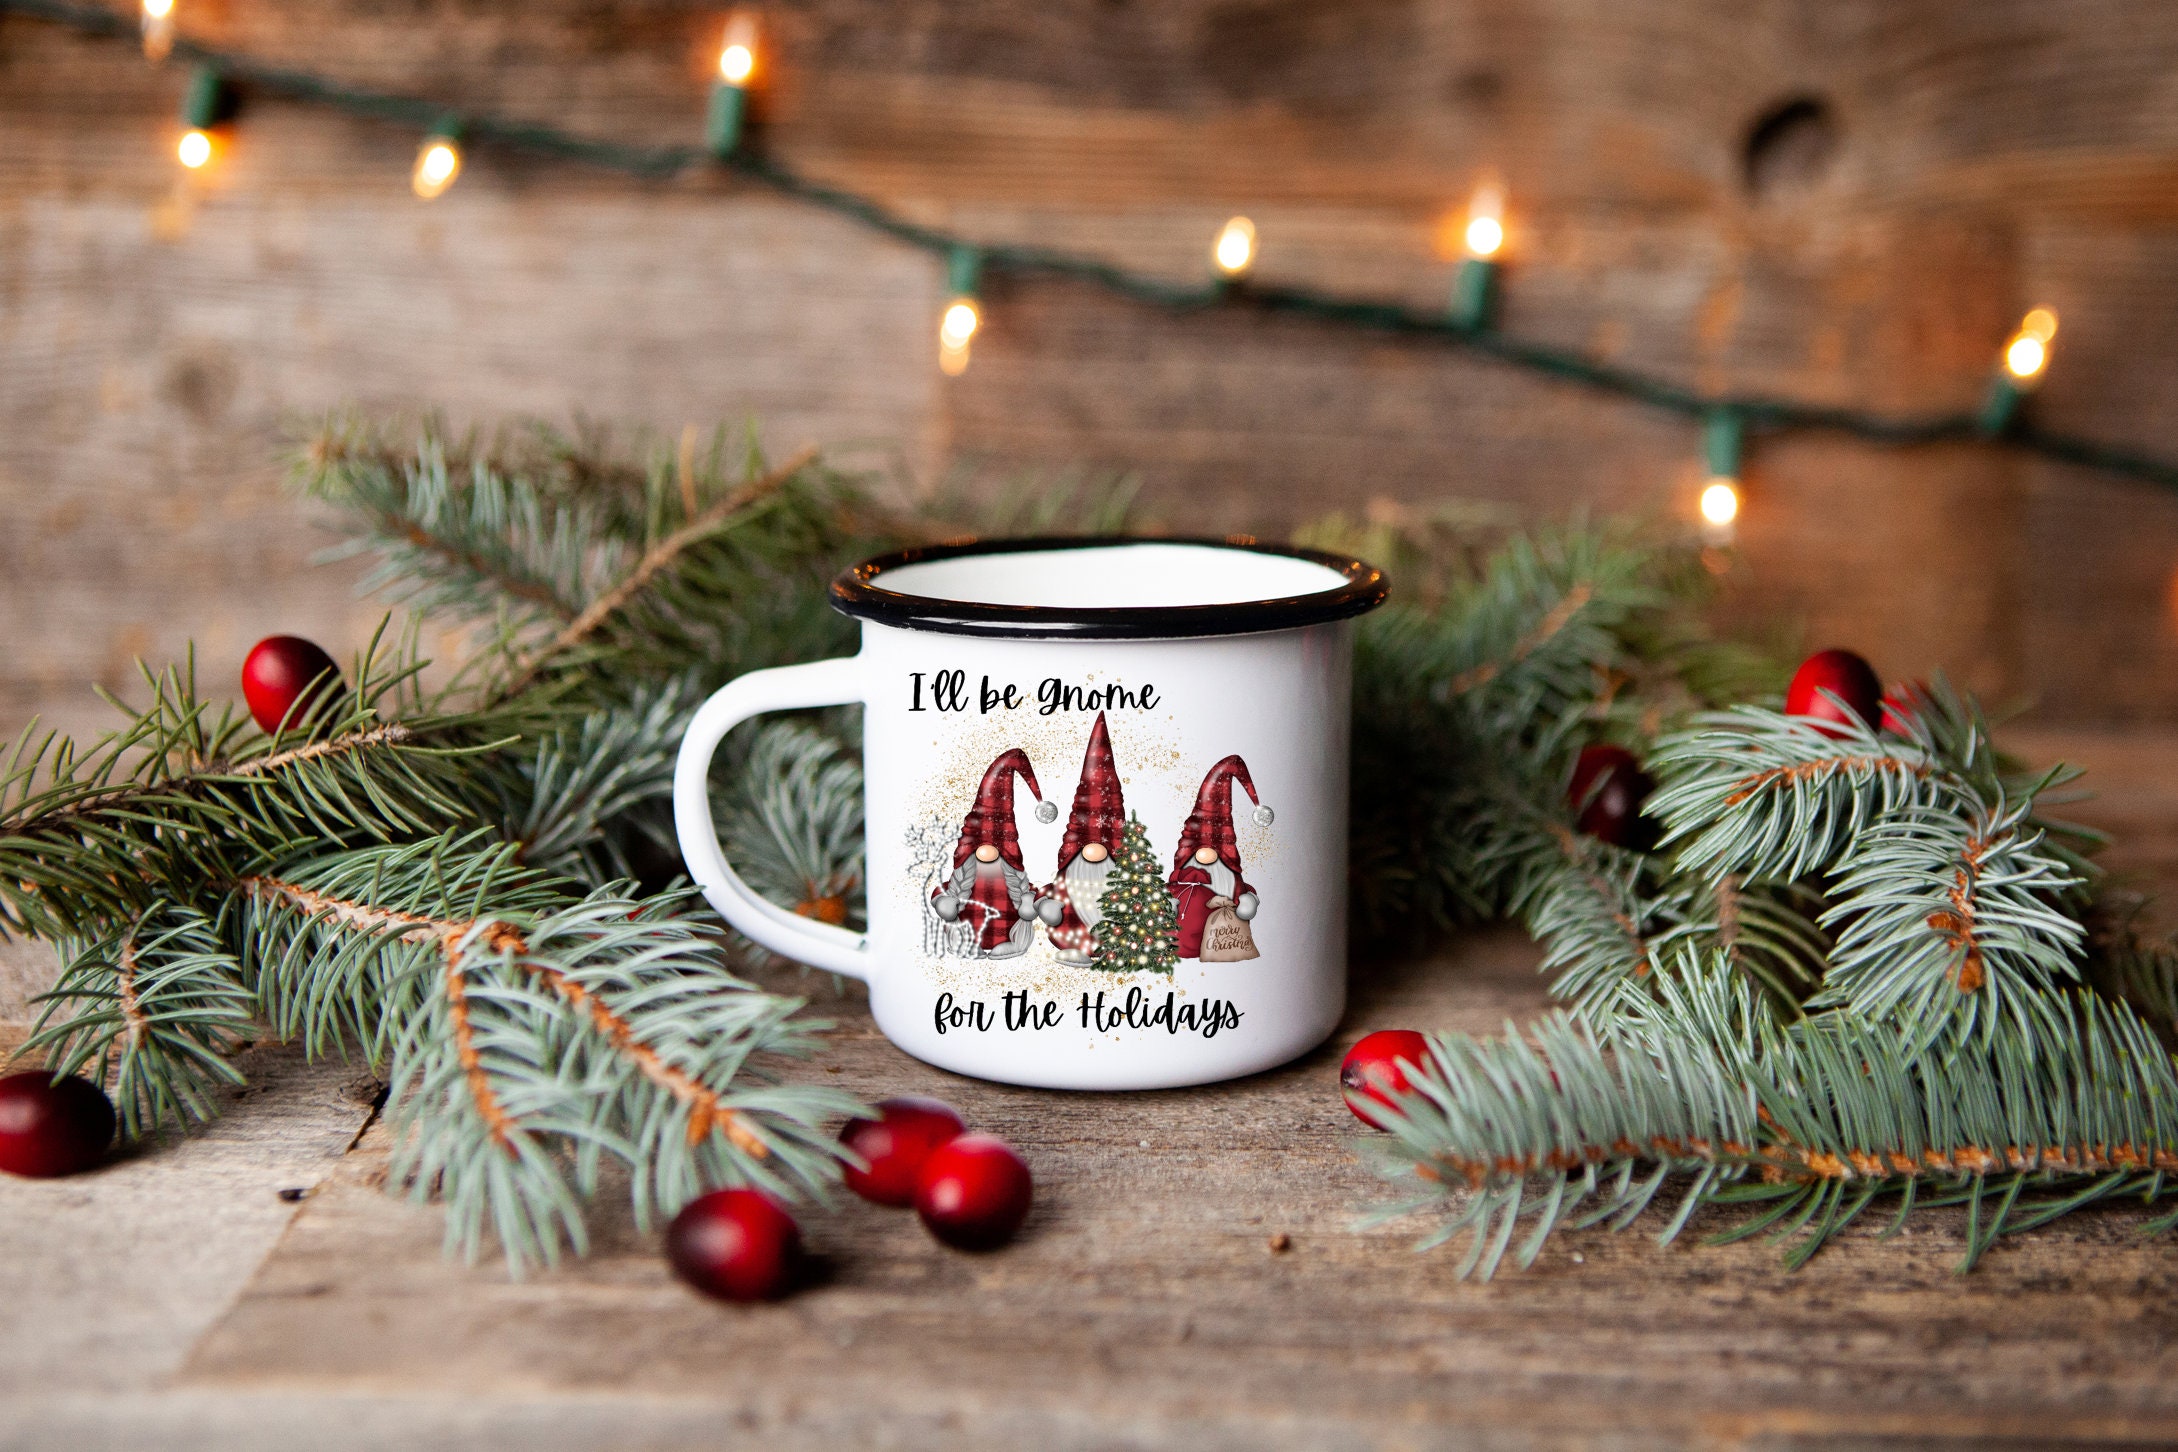 10oz Cute Christmas Tree Shaped Glass Coffee Mug Milk Tea Cup  Christmas Mug with Lid and Handle - China Glassware and Glass Cup price